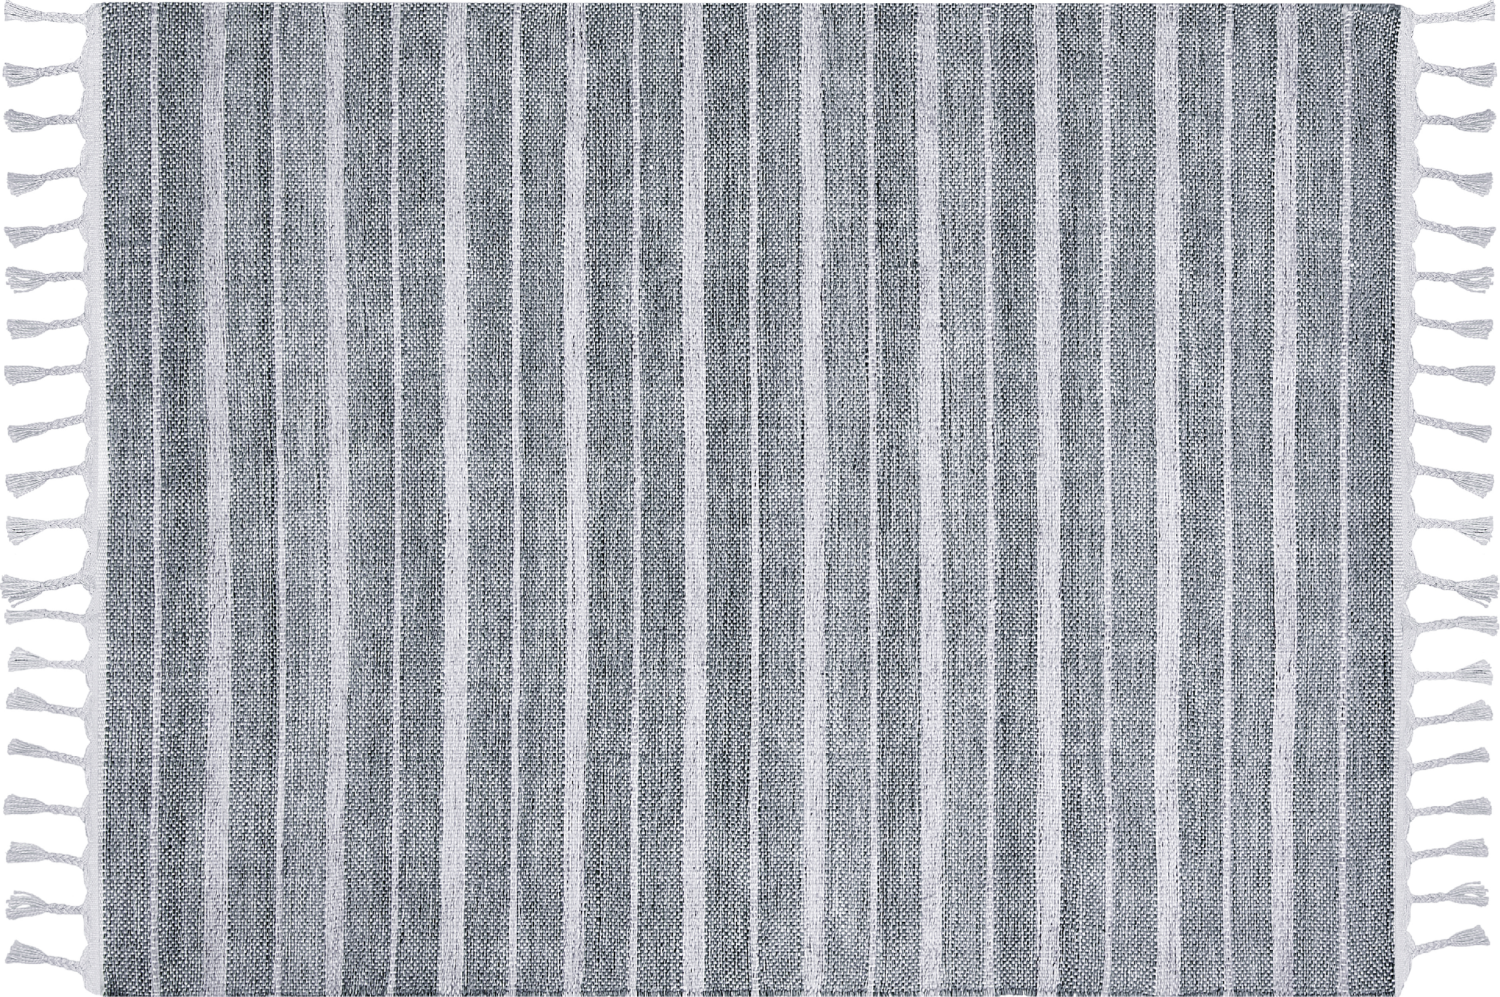 Outdoor Teppich hellgrau weiß 140 x 200 cm Streifenmuster Kurzflor BADEMLI Bild 1